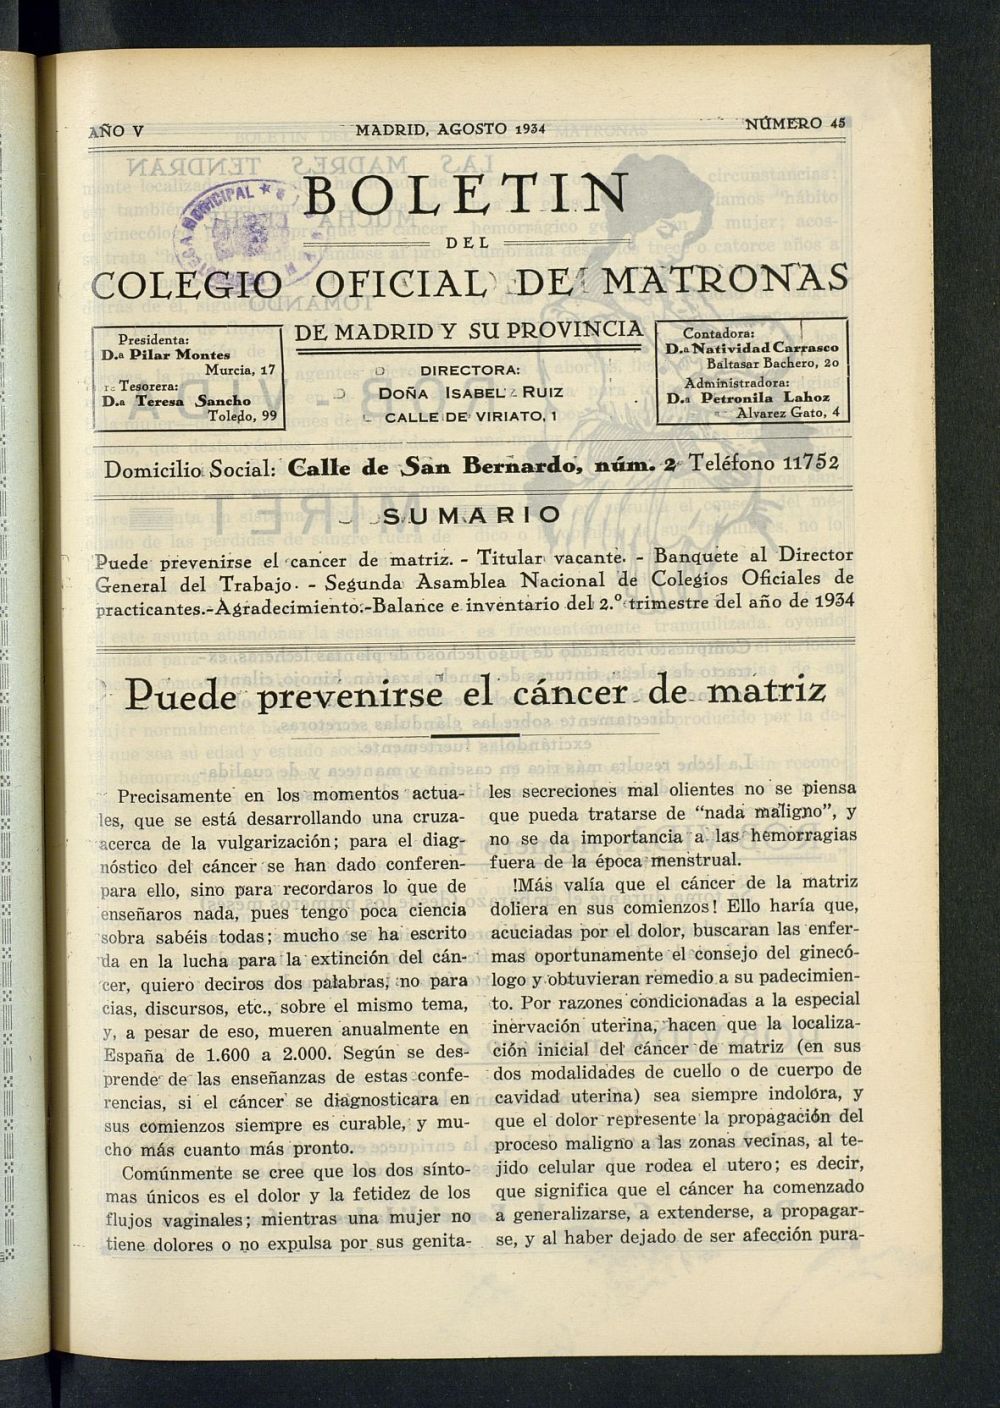 Boletn del Colegio Oficial de Matronas de Madrid y su Provincia de agosto de 1934